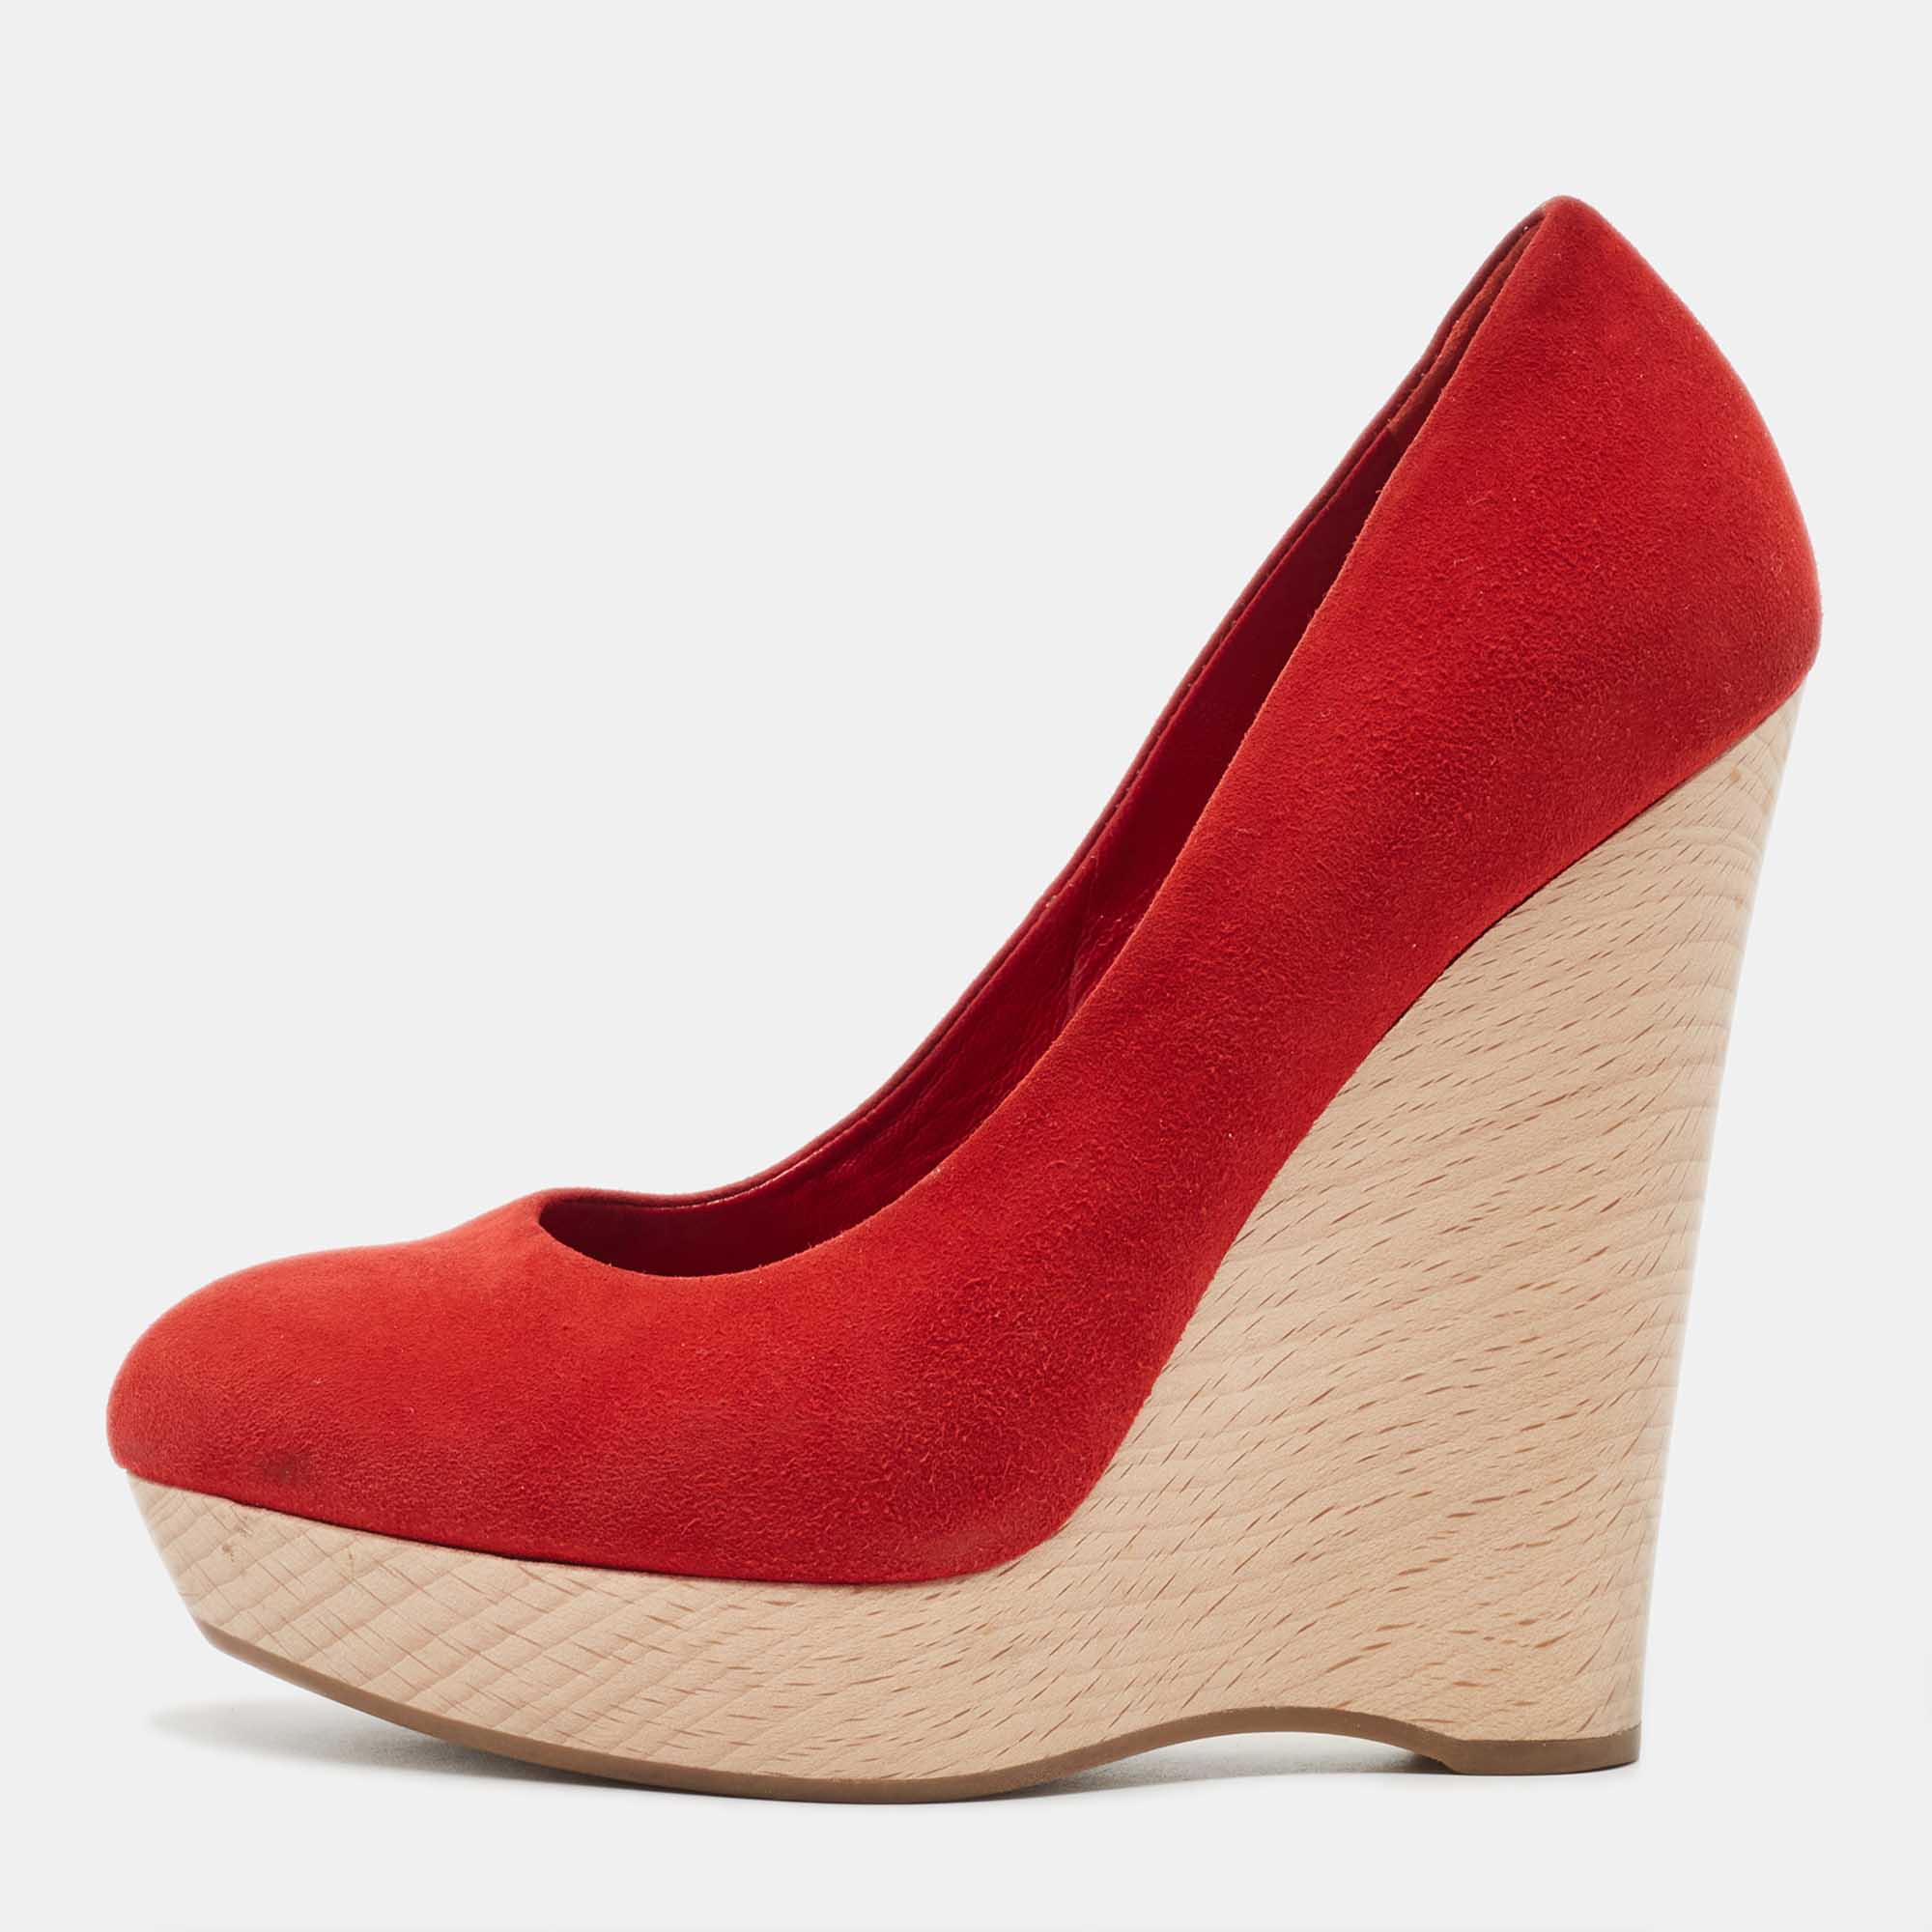 Saint laurent paris saint laurent red suede wadge sandals size 35